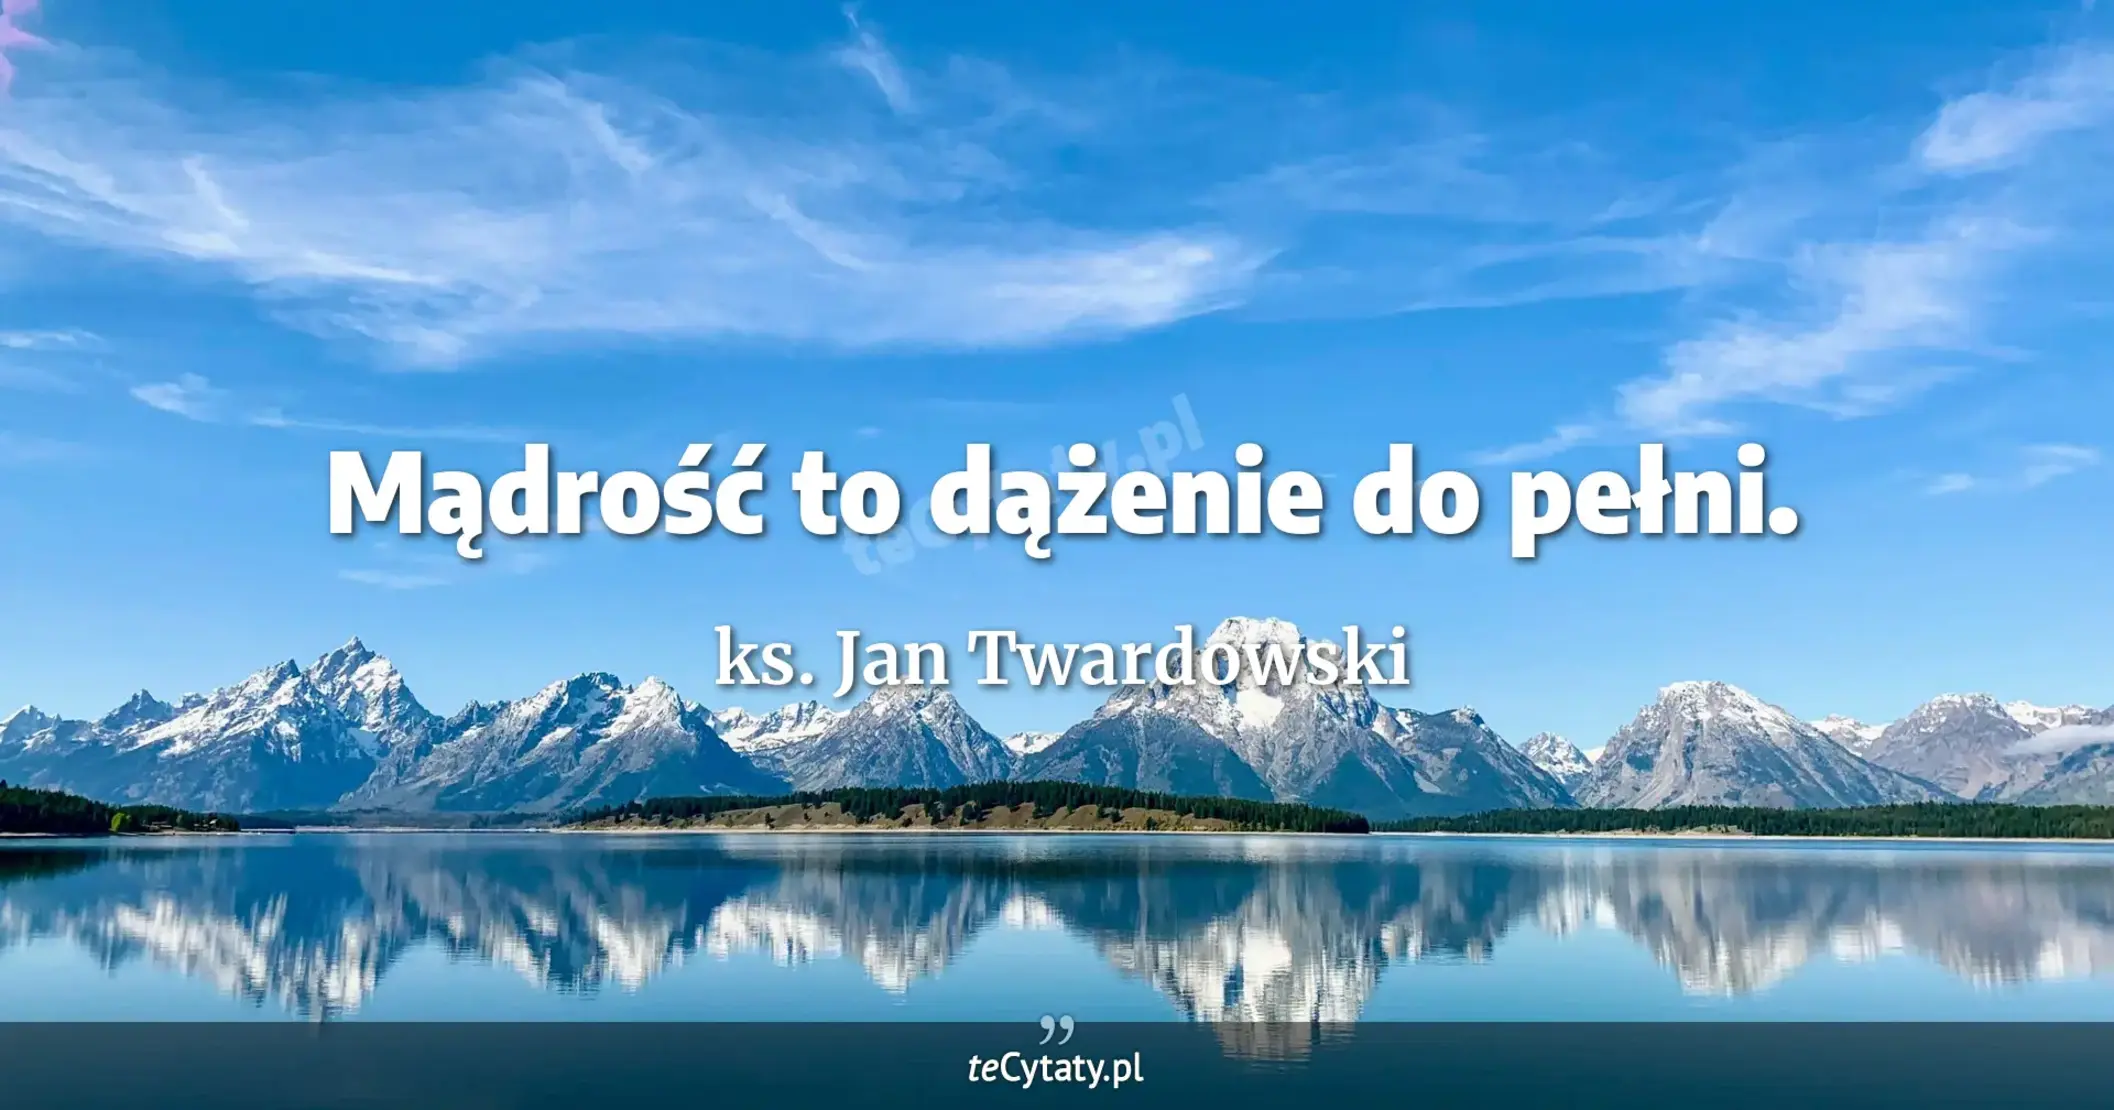 Mądrość to dążenie do pełni. - ks. Jan Twardowski